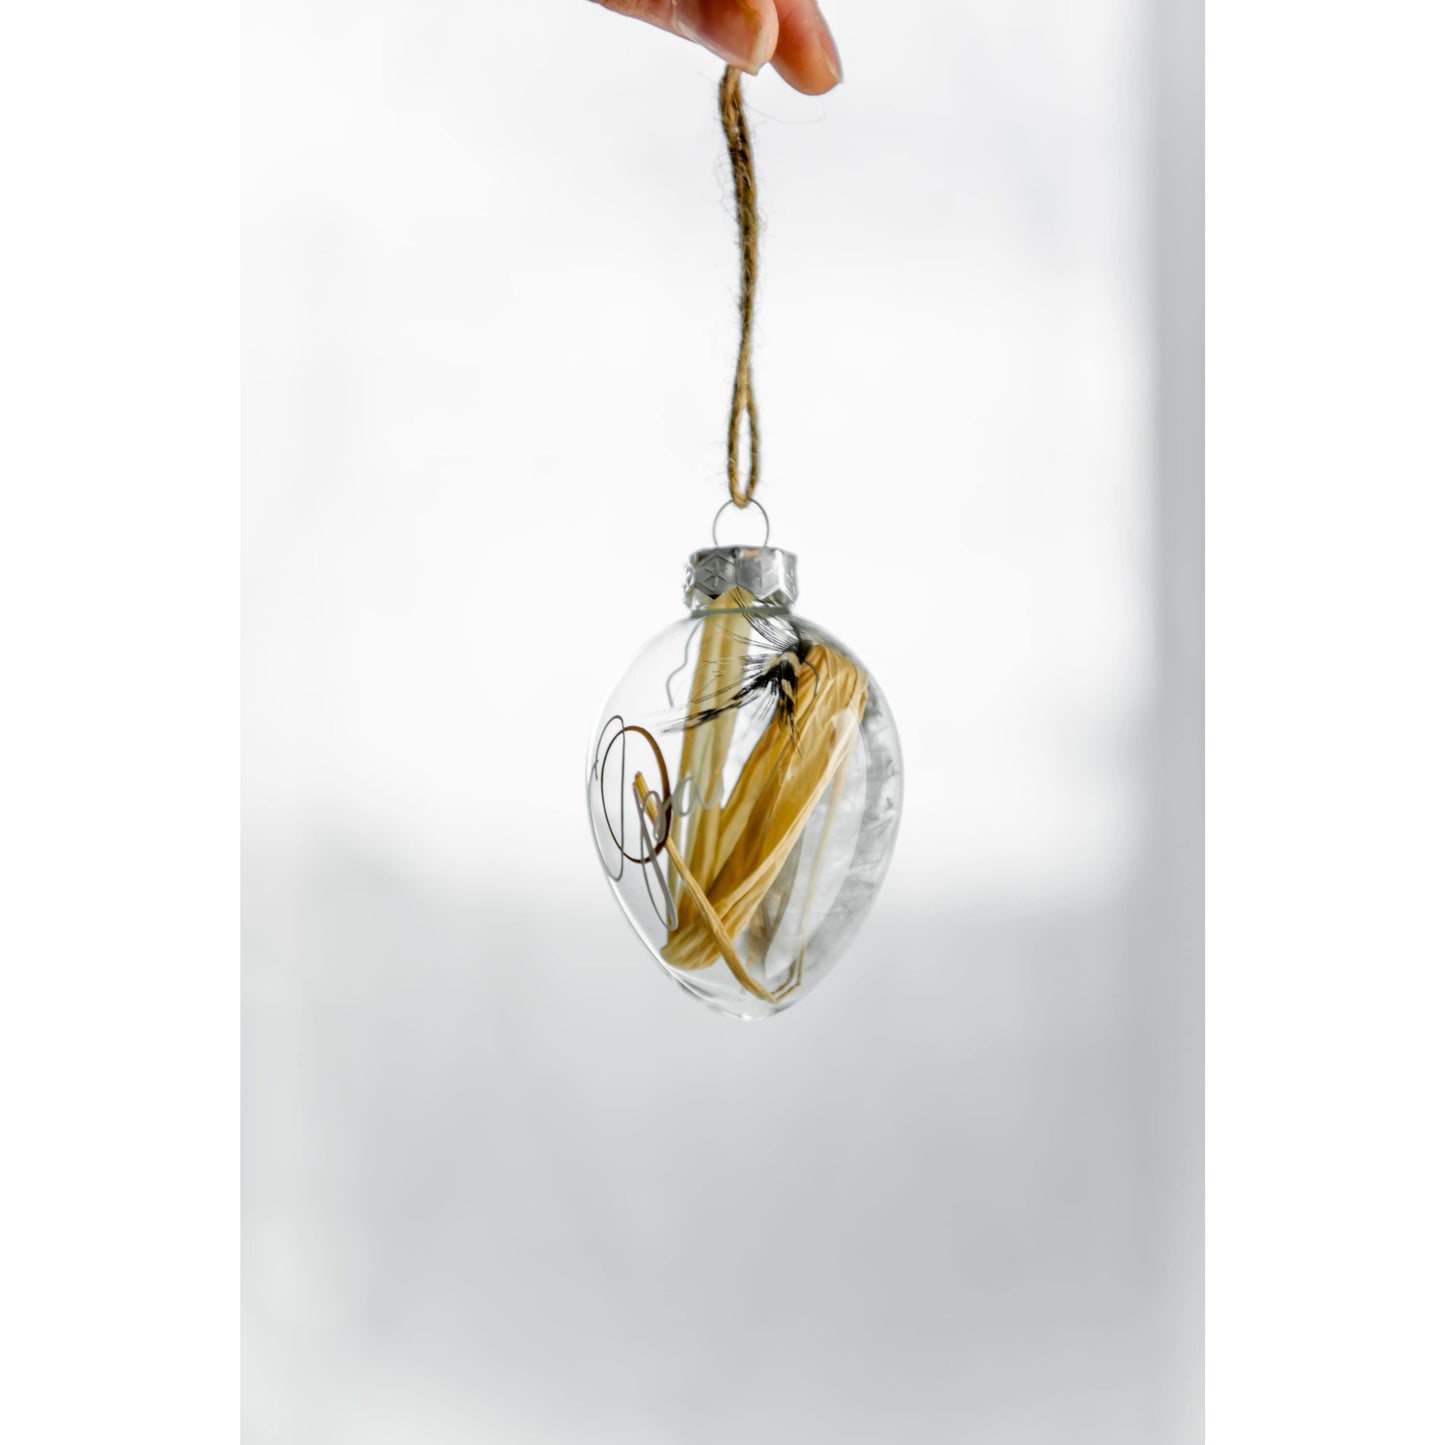 Personalisierte Ostereier aus Glas mit Perlhuhnfeder und Stroh